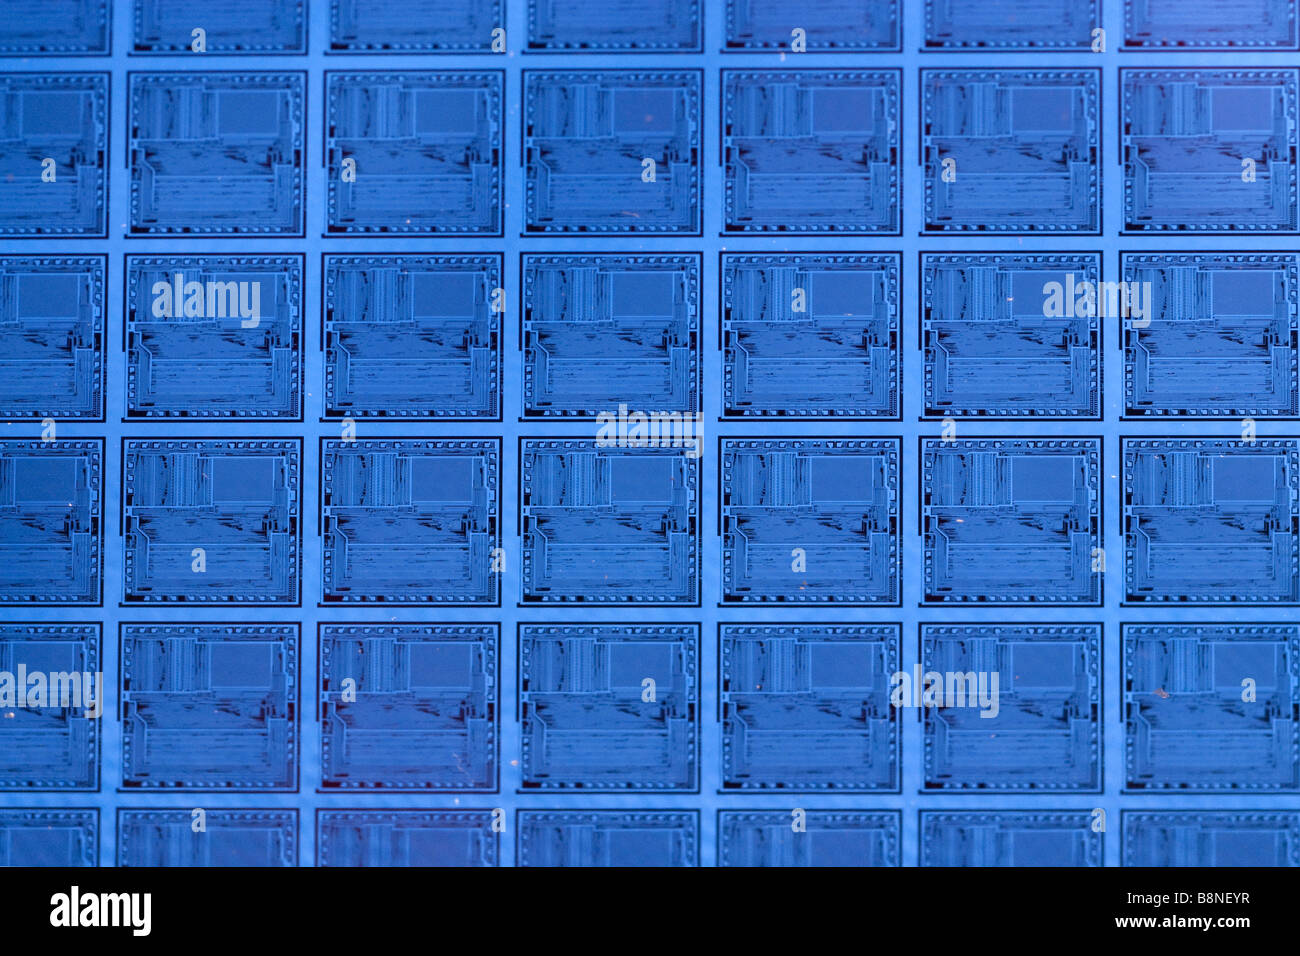 Muster der Mikrochip-Schaltungen auf Silizium Halbleiter-Wafer-Computer. Stockfoto